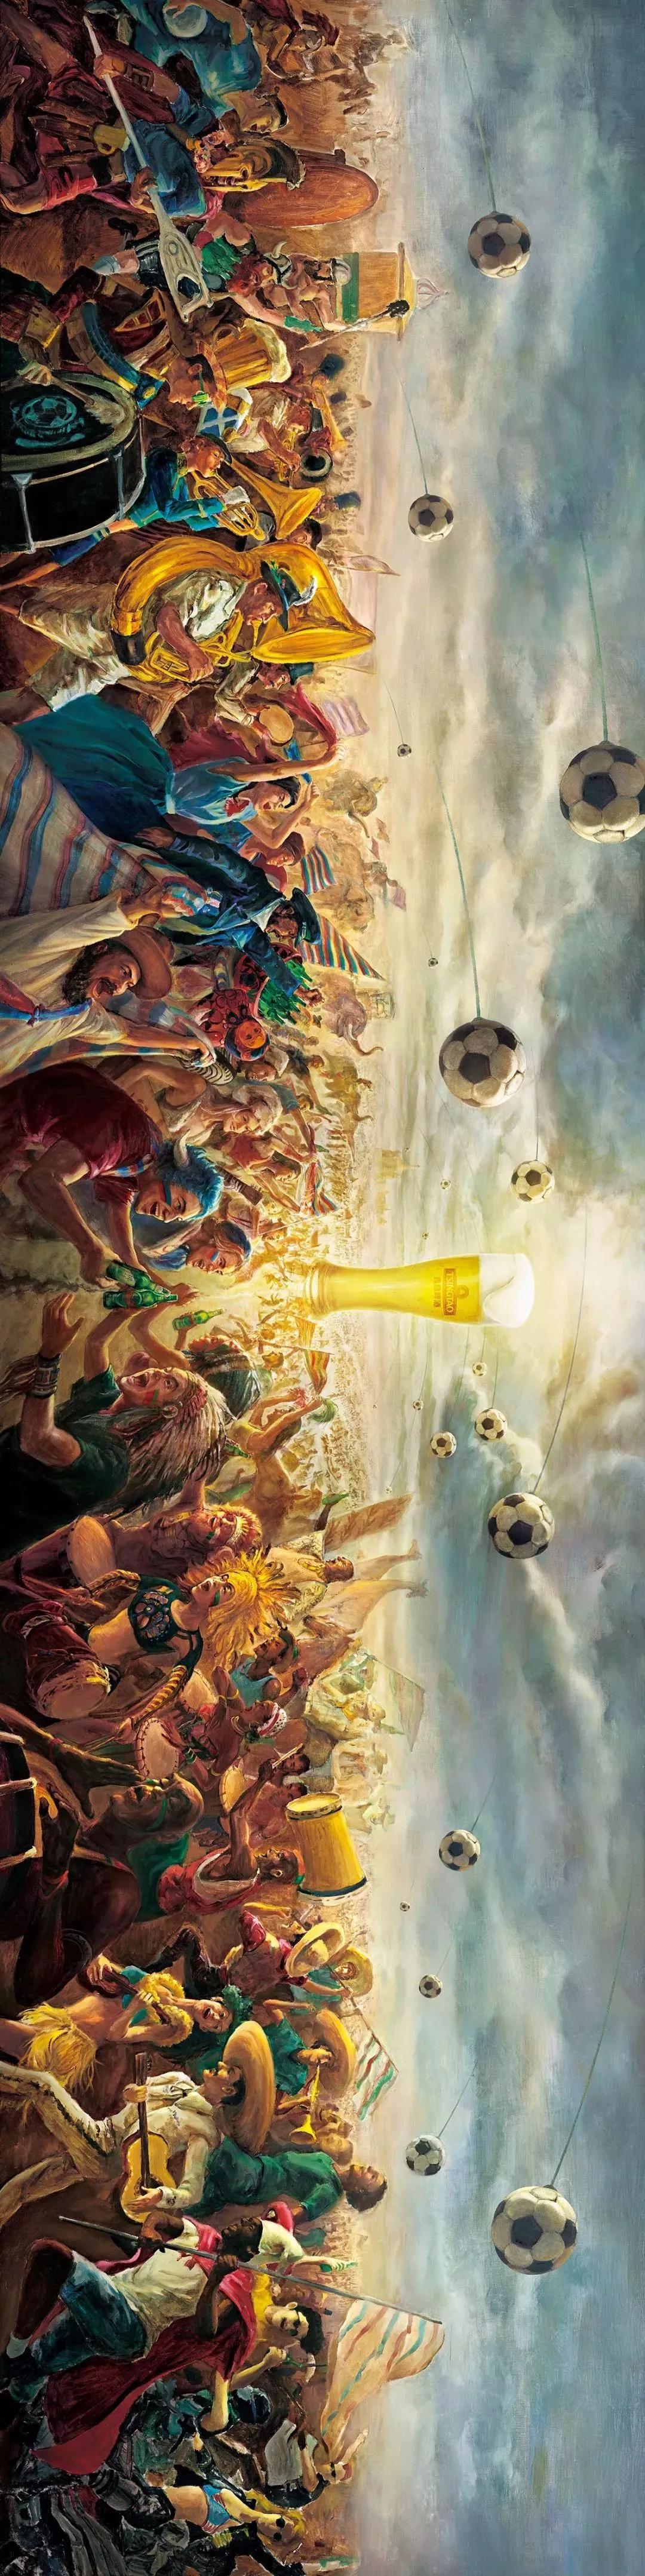 世界杯广告大战今晚同步打响，先来回顾一下这10个不得不看的广告案例吧